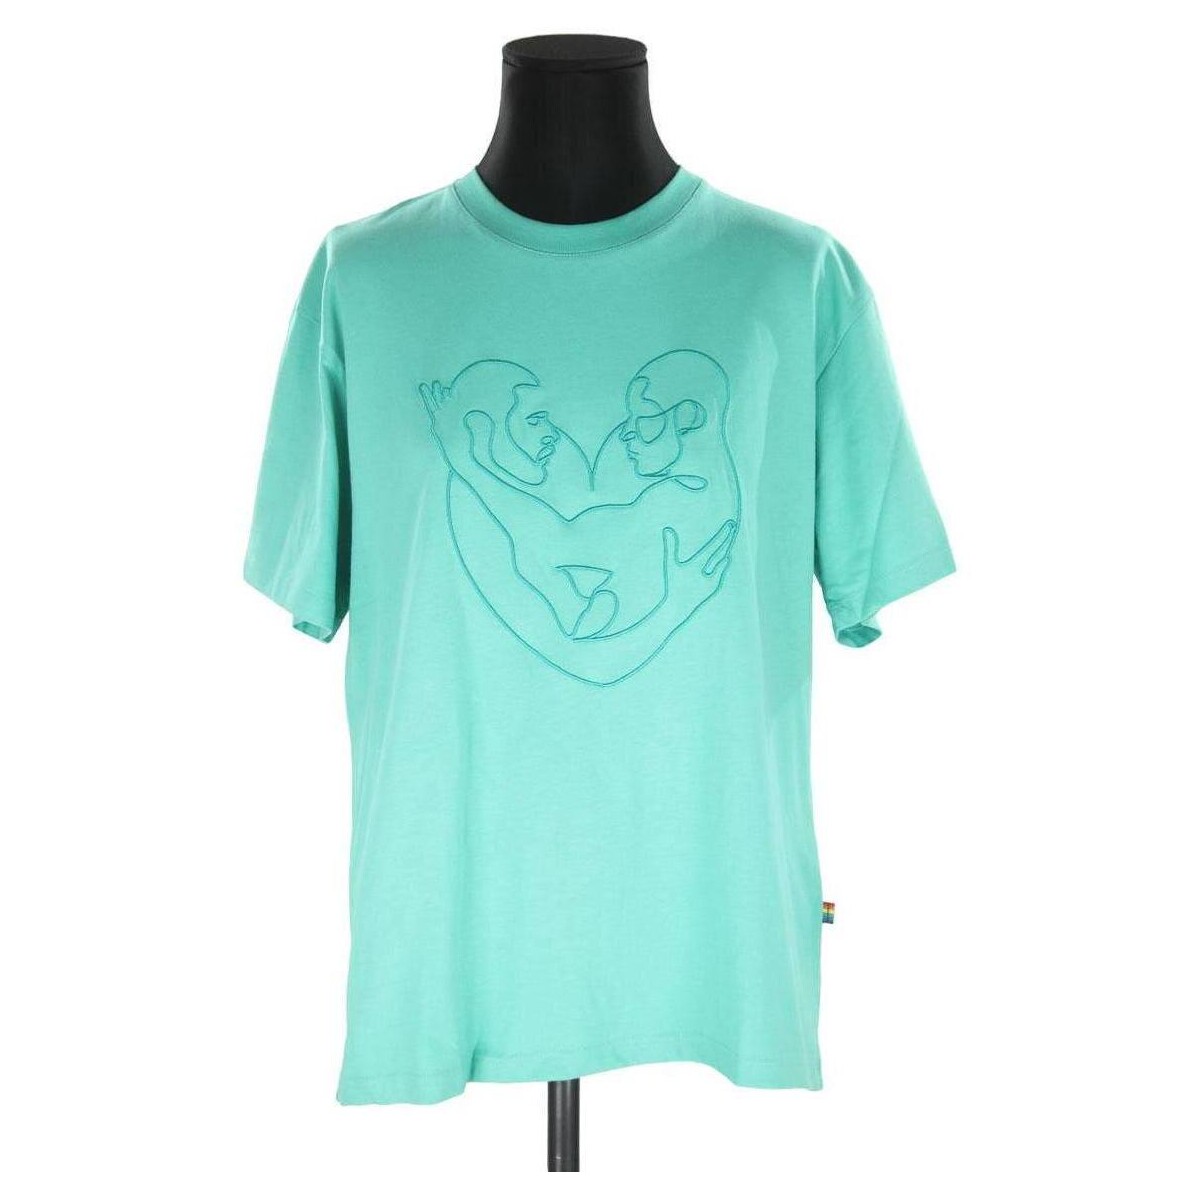 Vêtements Femme Débardeurs / T-shirts sans manche The Kooples Top en coton Vert